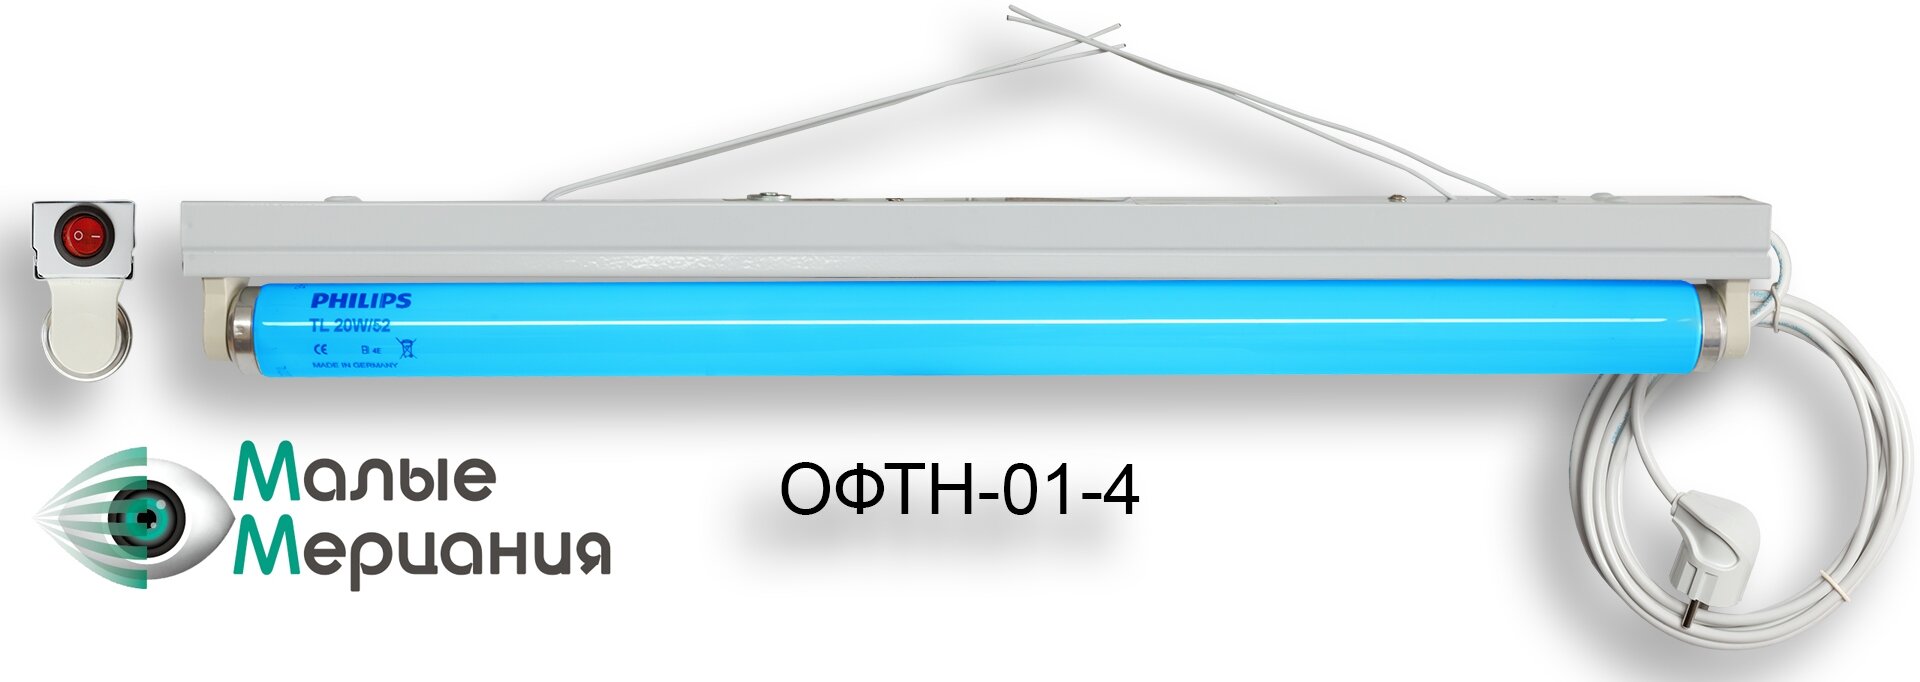 ОФТН-01-4 БМ.jpg